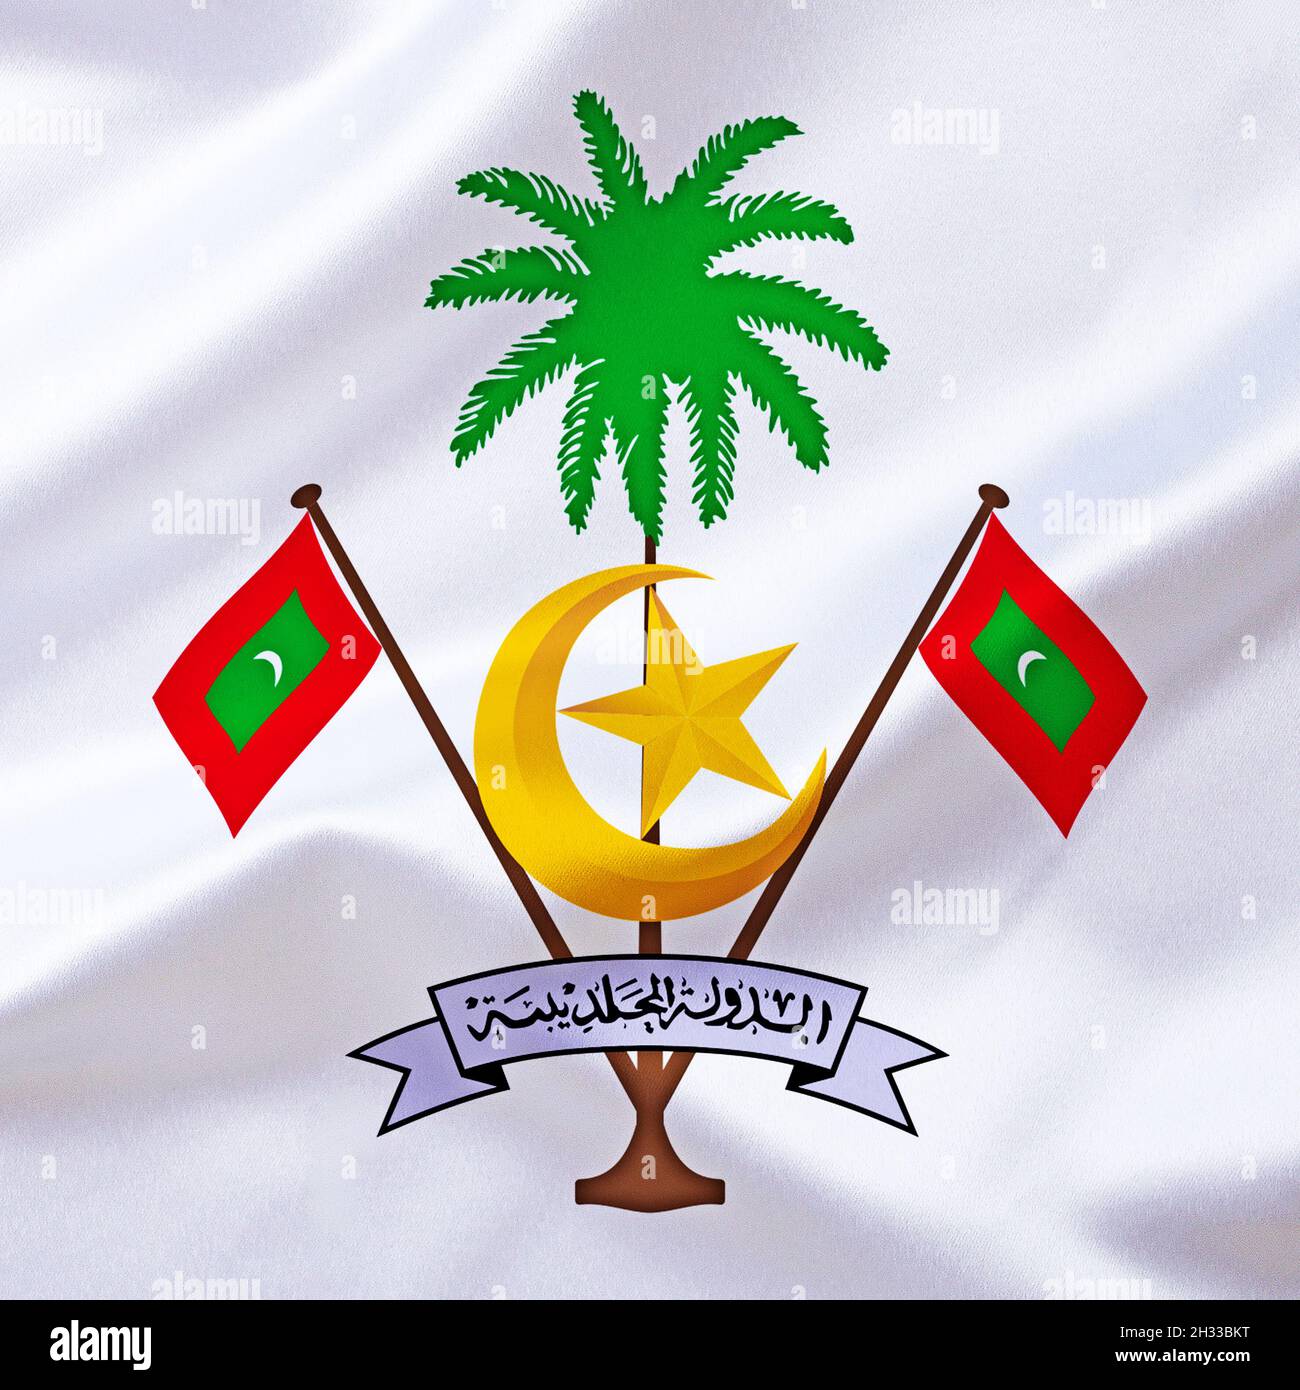 Das Wappen von den Malediven, Inselstaat, Inseln in Südasien, Foto de stock